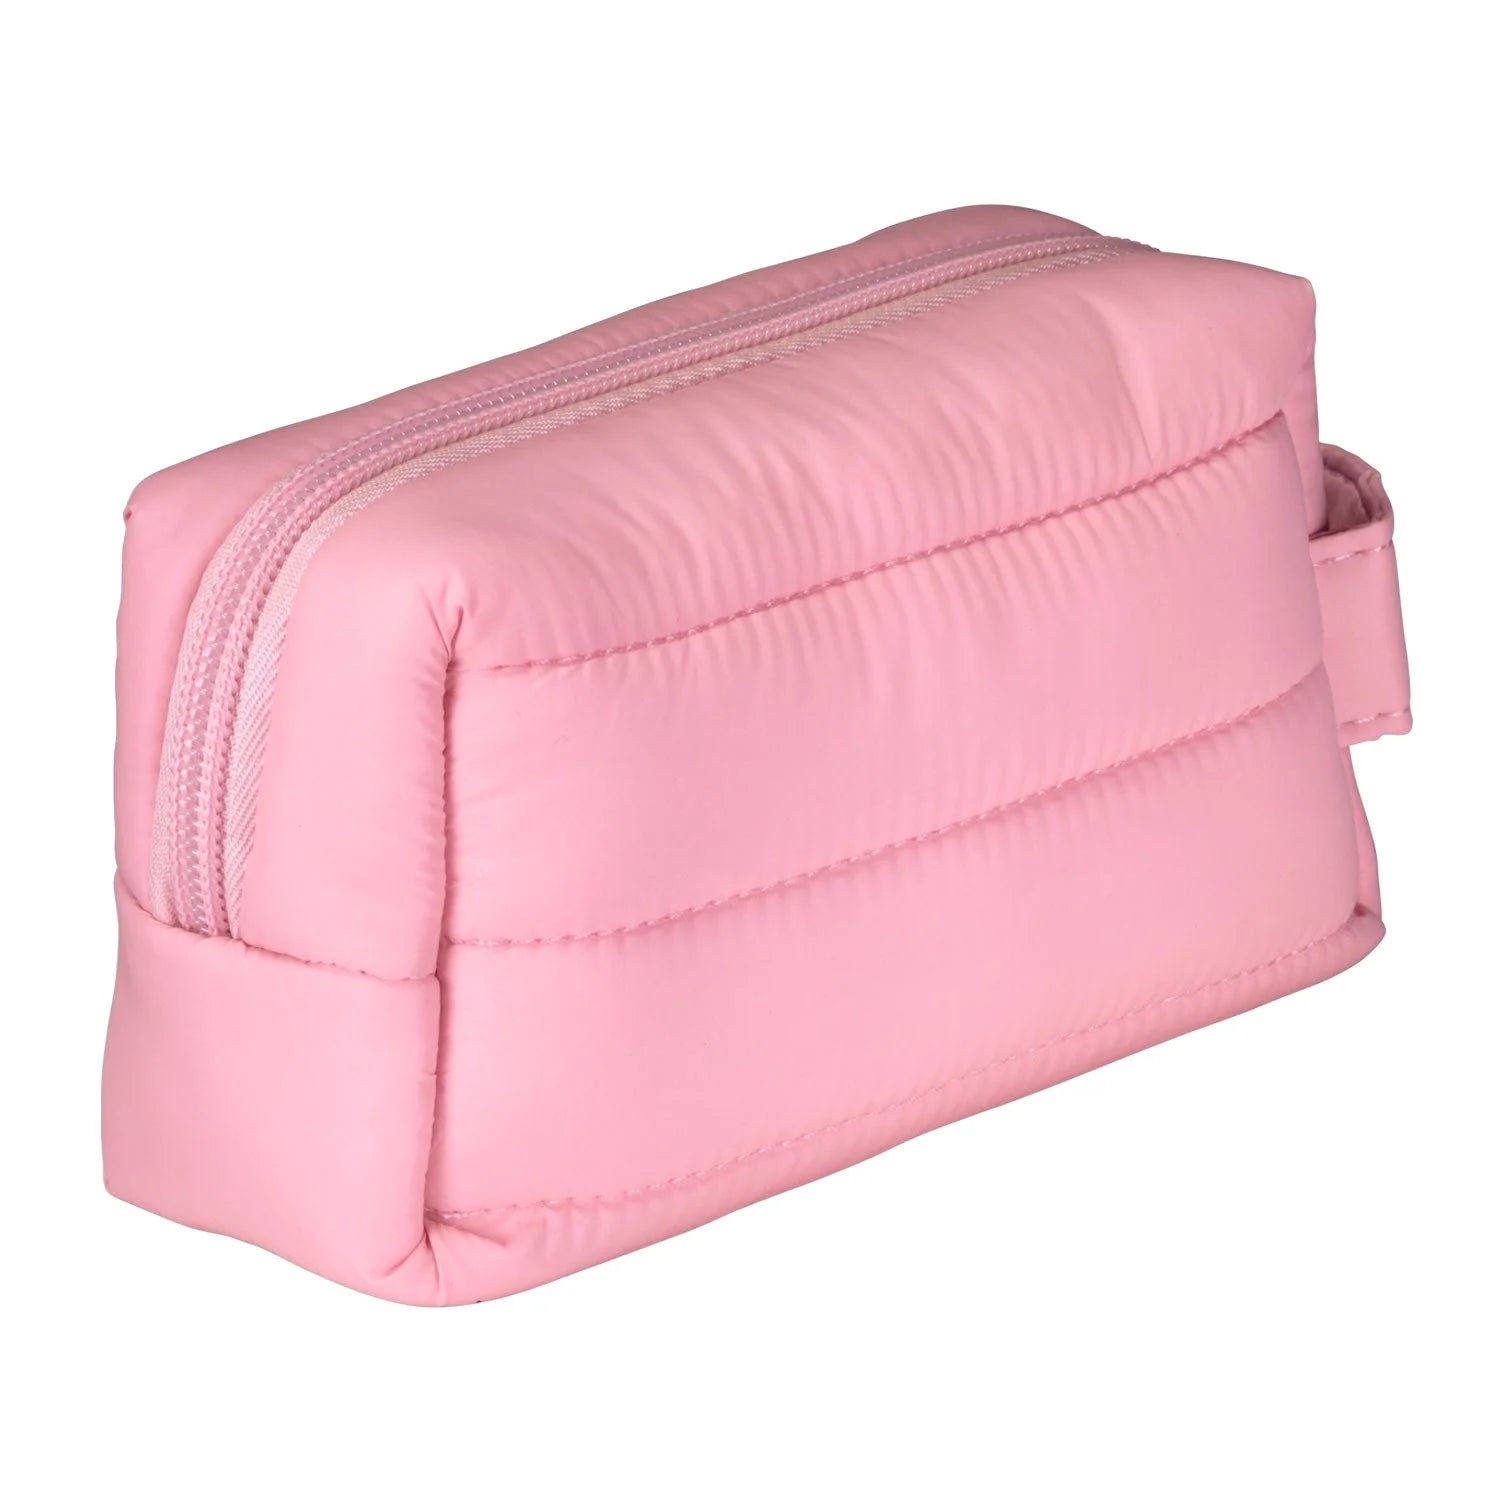 Living Libations | Mini Puffer Dopp Bag Primrose Pink